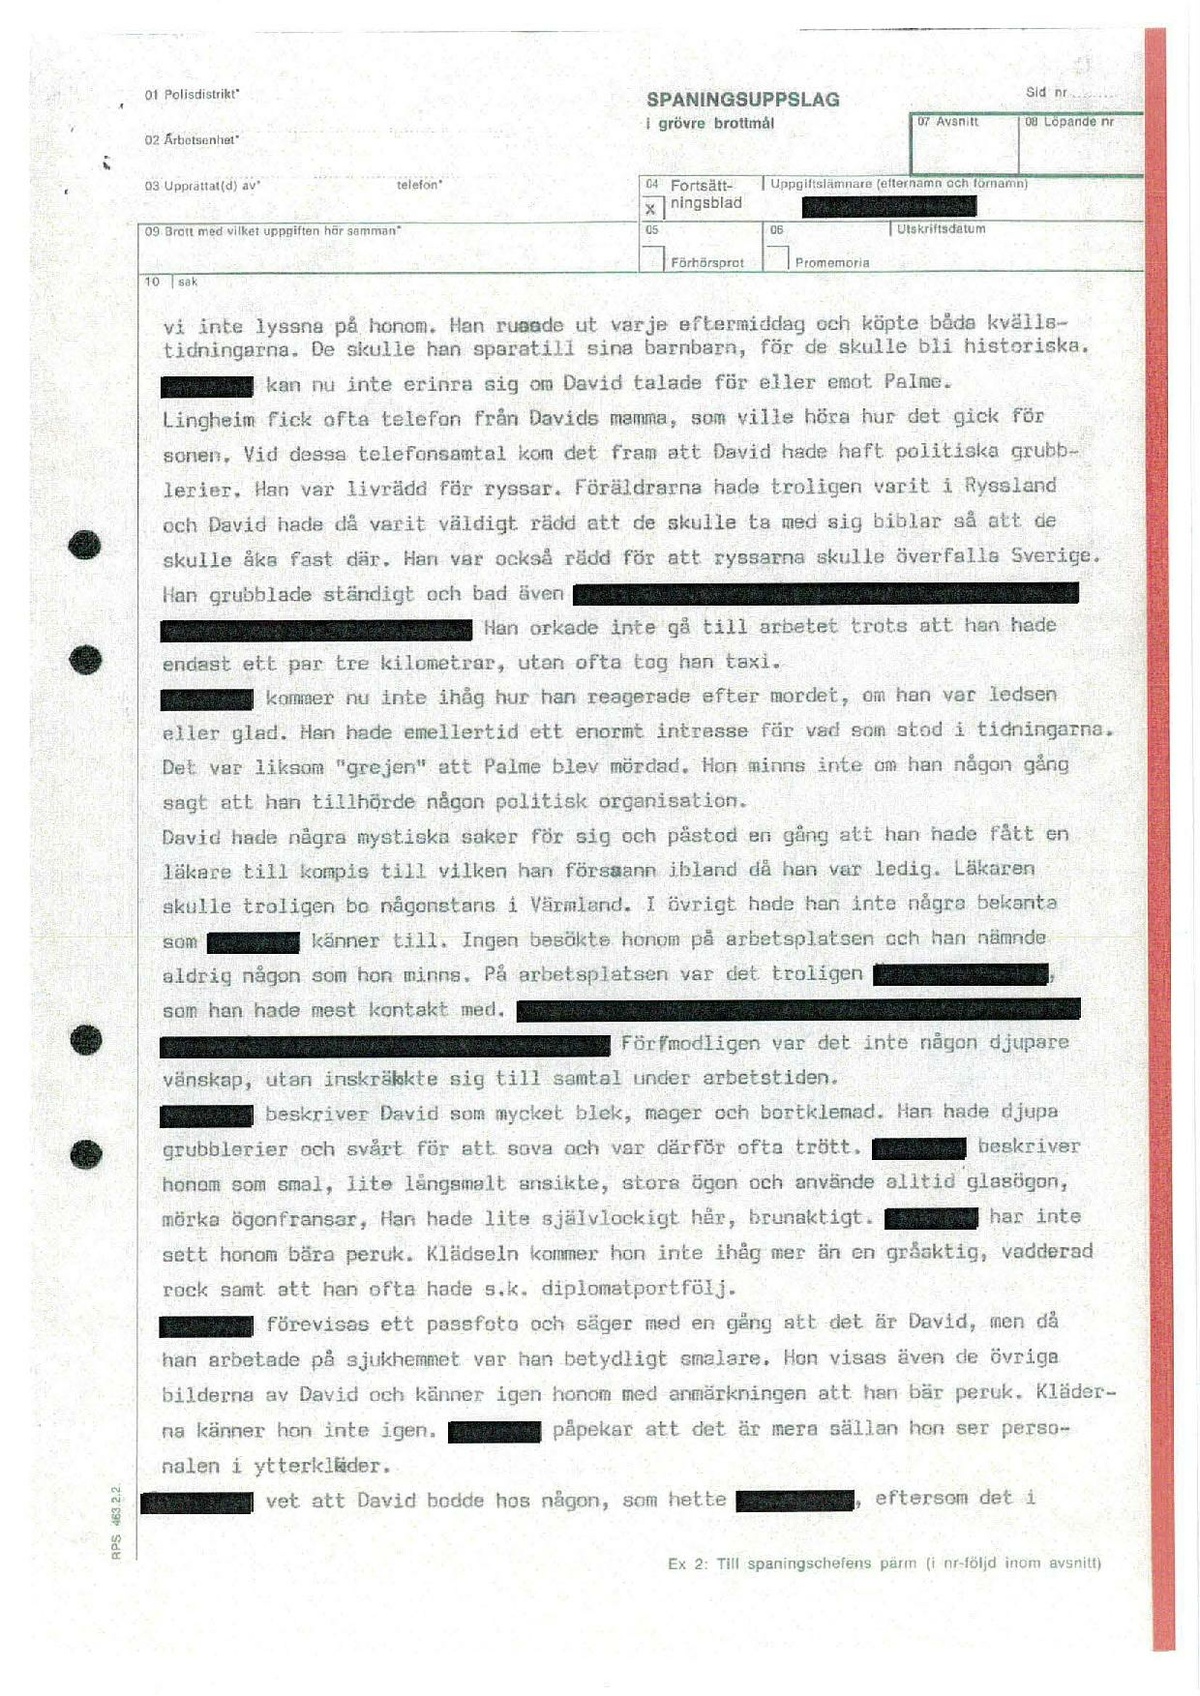 Pol-1986-03-20 1200 D6770-01 Fr Lingheim om David Fredins anställning.pdf